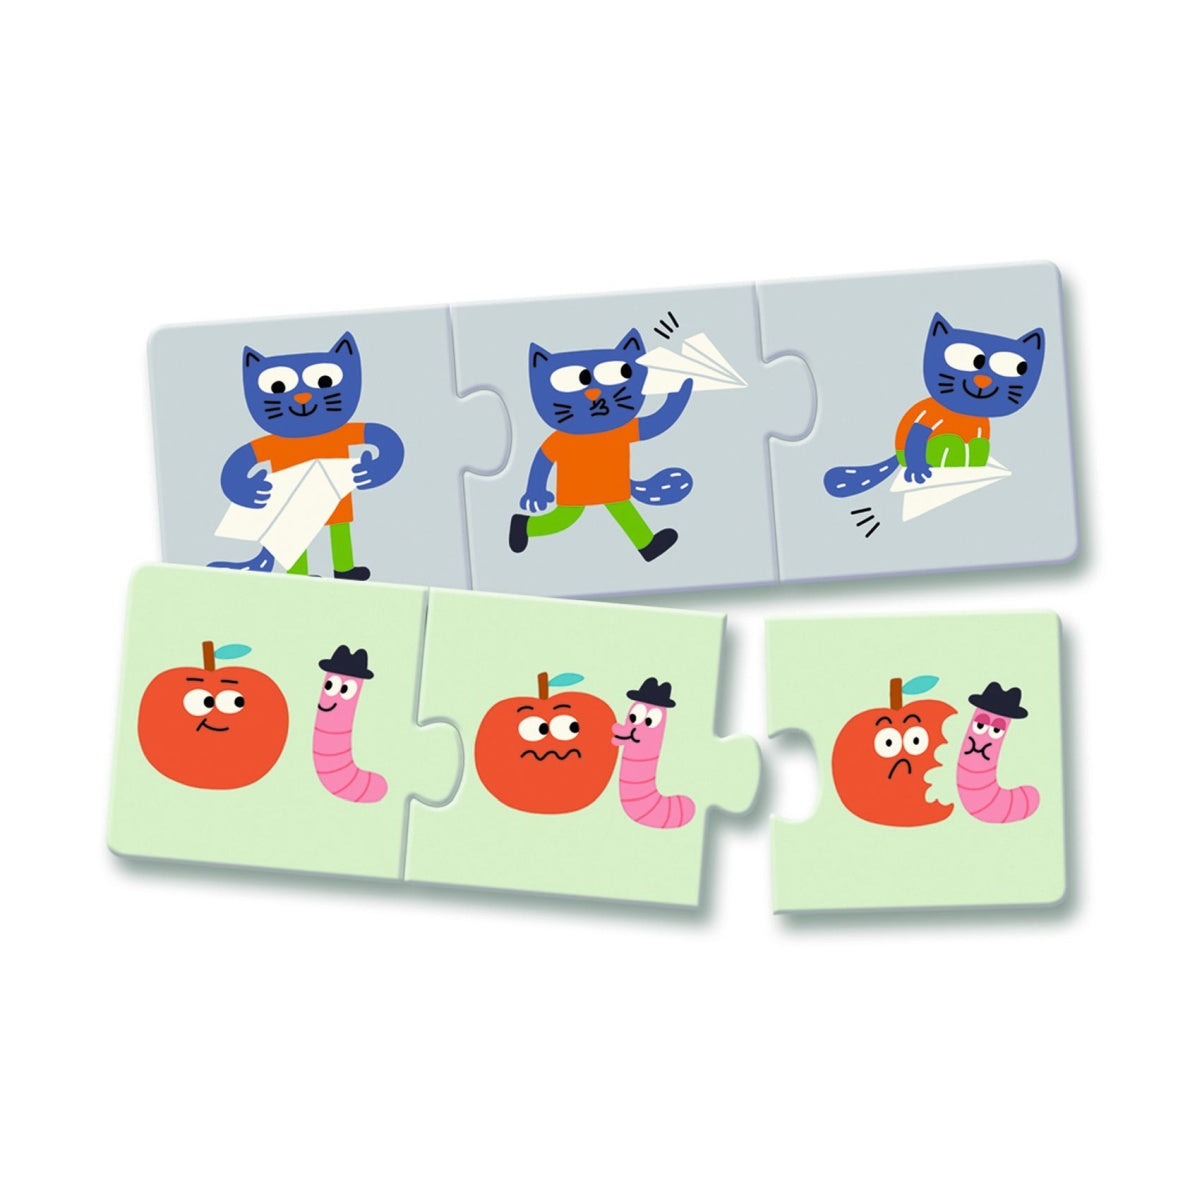 Das Djeco Puzzle trio: Geschichten ist ein Lernspiel für Kinder ab 3 Jahren mit 8 Mini-Puzzle. Jedes kleine Puzzle besteht aus drei Teilen, werden sie richtig zusammengesetzt, ist eine lustige Geschichte zu sehen. Puzzlespaß und Lerneffekt!